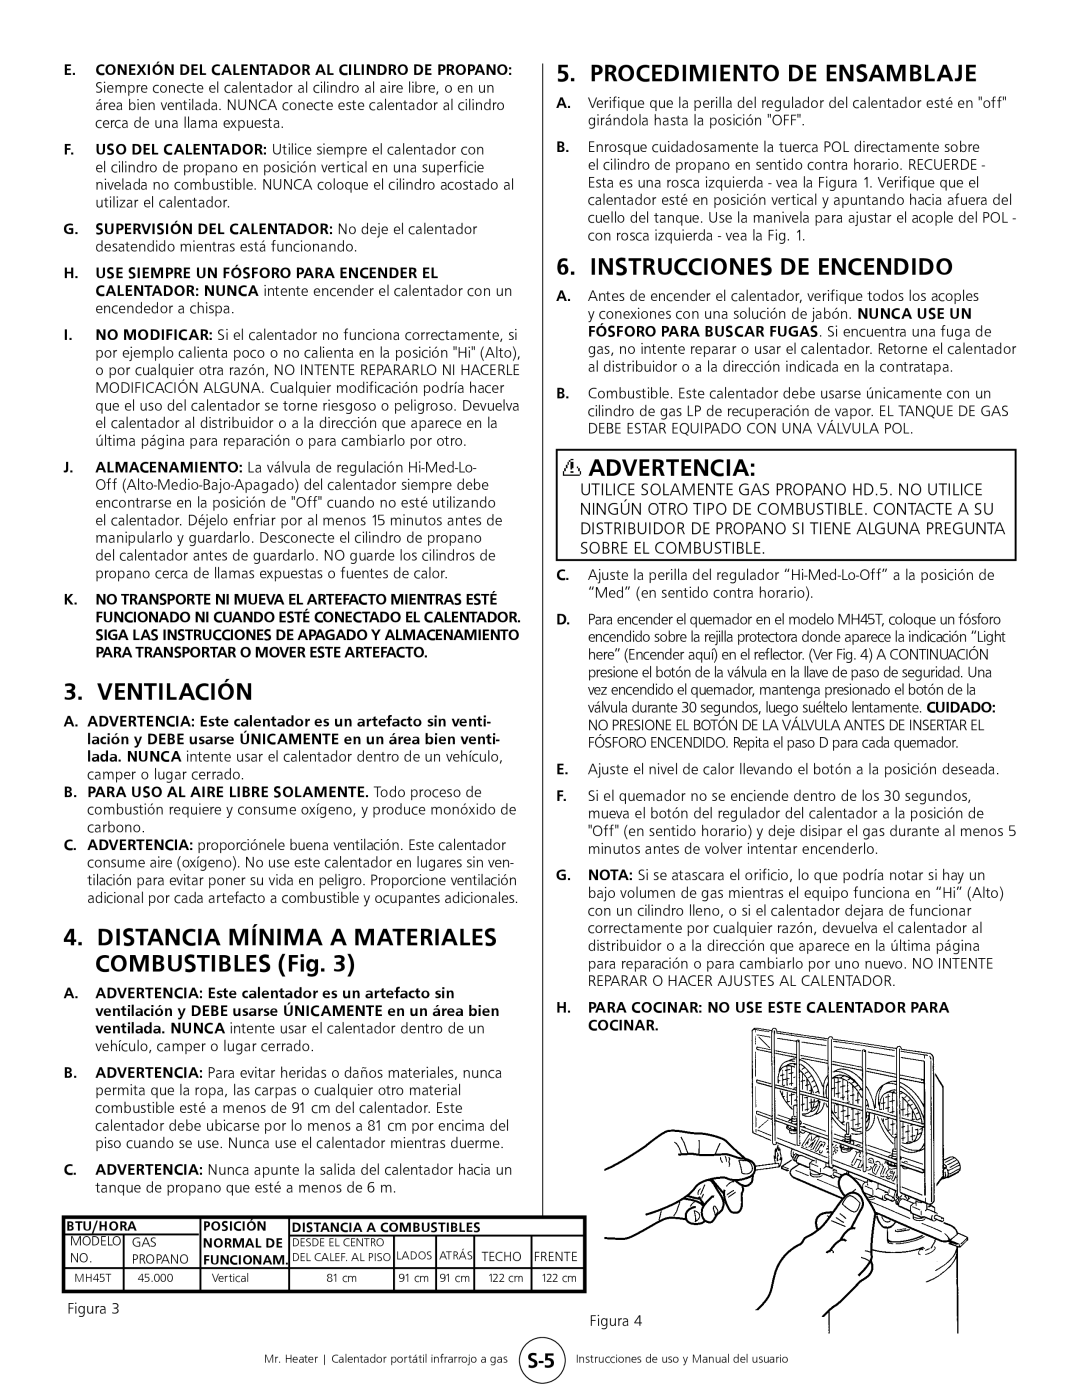 Mr. Heater MH45T Instrucciones De Encendido, Ventilación, Distancia Mínima A Materiales, COMBUSTIBLES Fig, Advertencia 